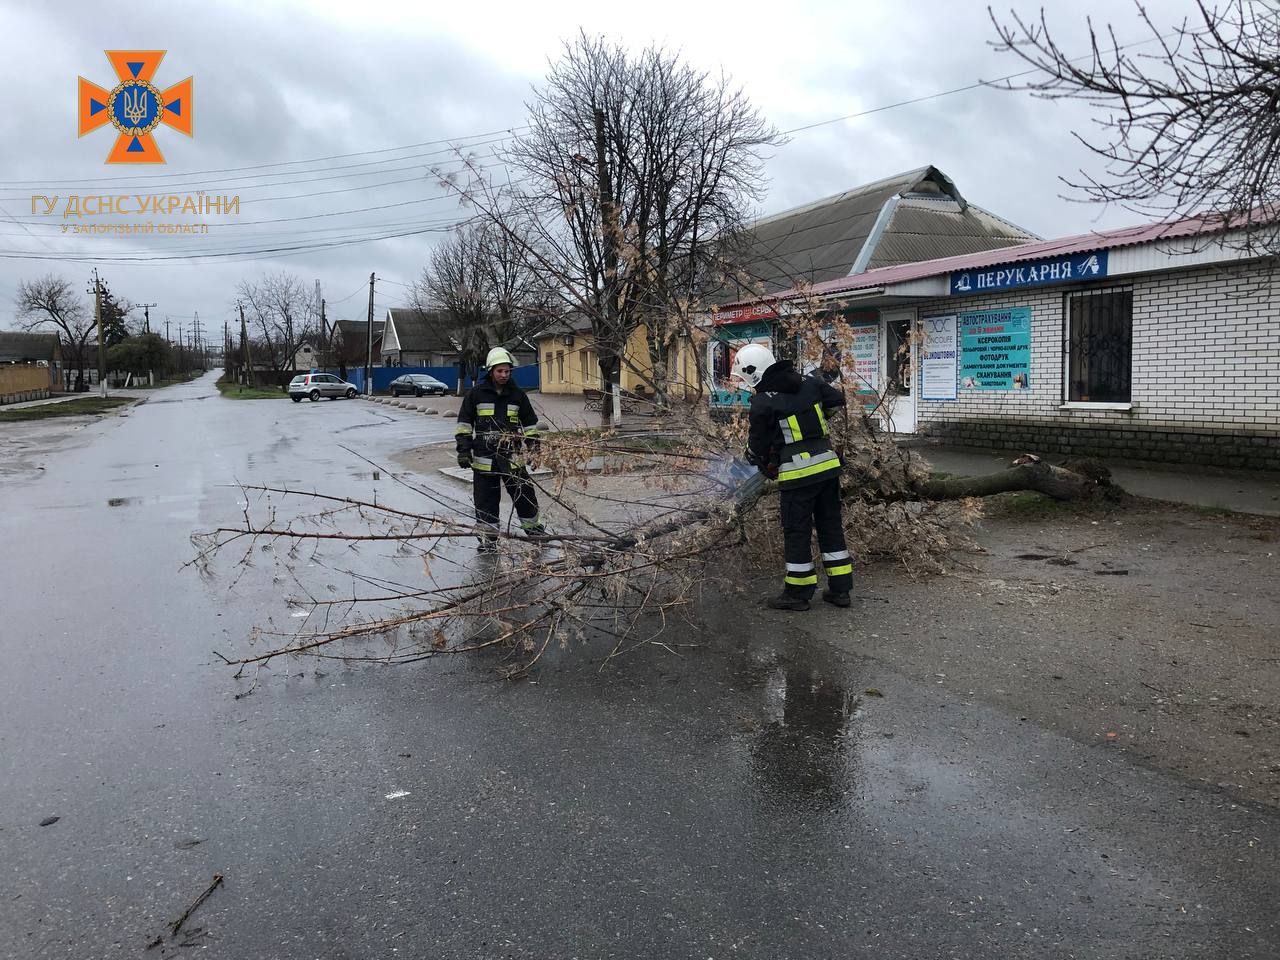 Непогода в Запорожской области: 14 обесточенных населенных пунктов, упавшее дерево и помощь водителям, — ФОТО